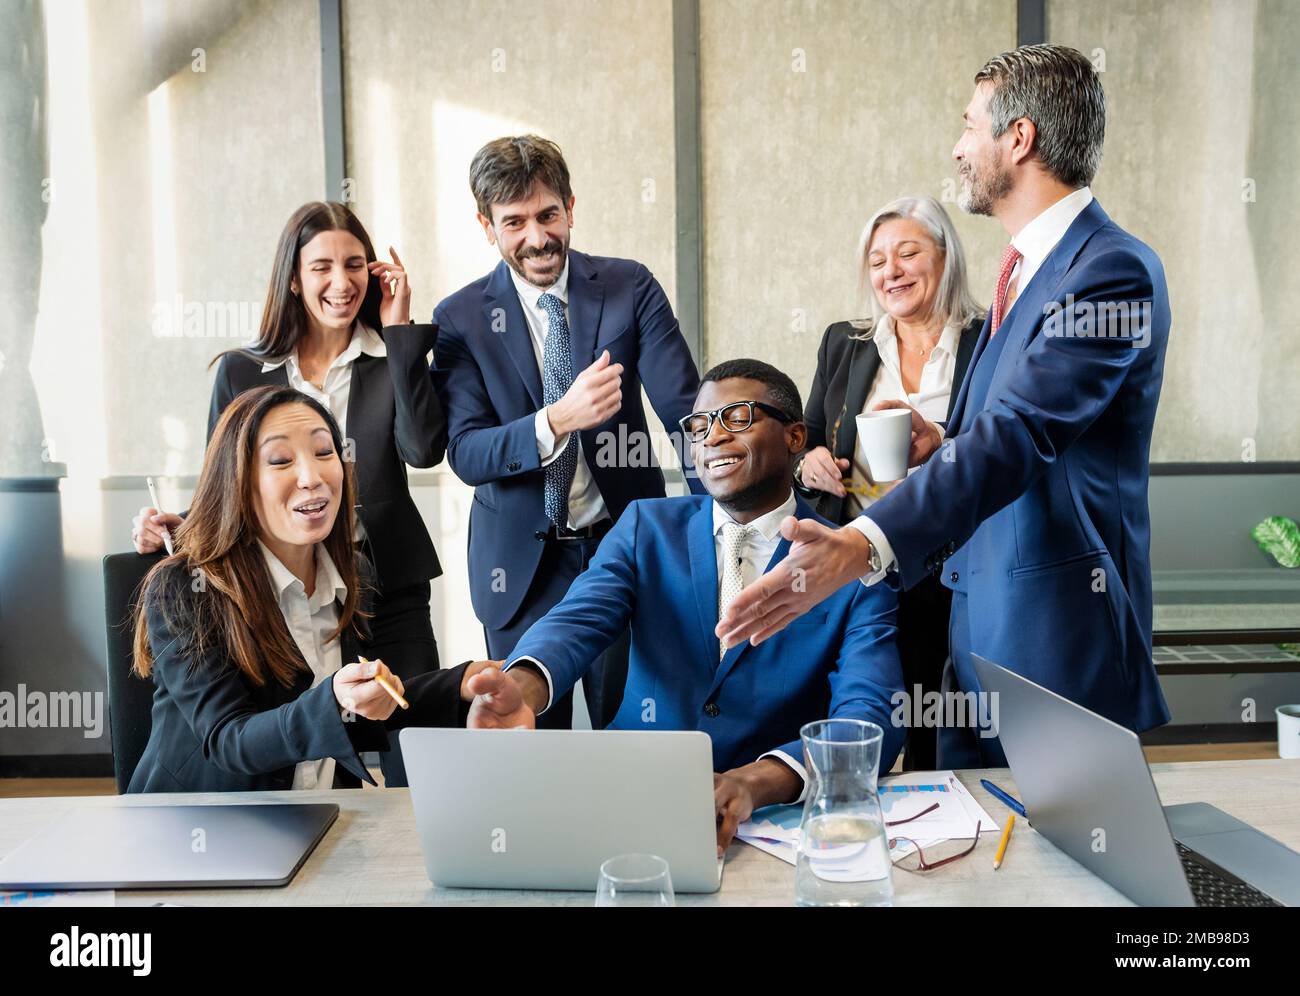 Équipe de collègues masculins et féminins multiraciaux heureux dans des vêtements formels se rassemblant près d'un ordinateur portable et appréciant les nouvelles dans un bureau moderne Banque D'Images